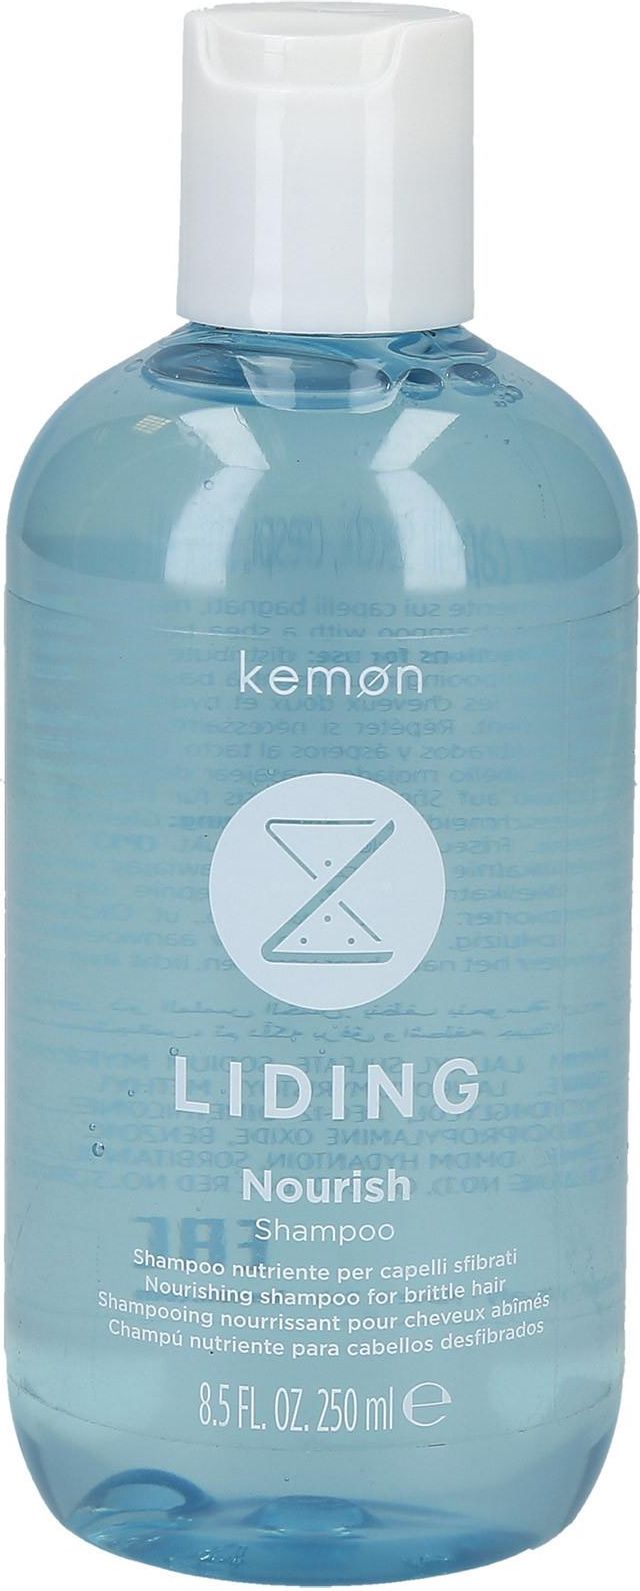 kemon liding nourish szampon odżywczy do włosów suchych 250ml